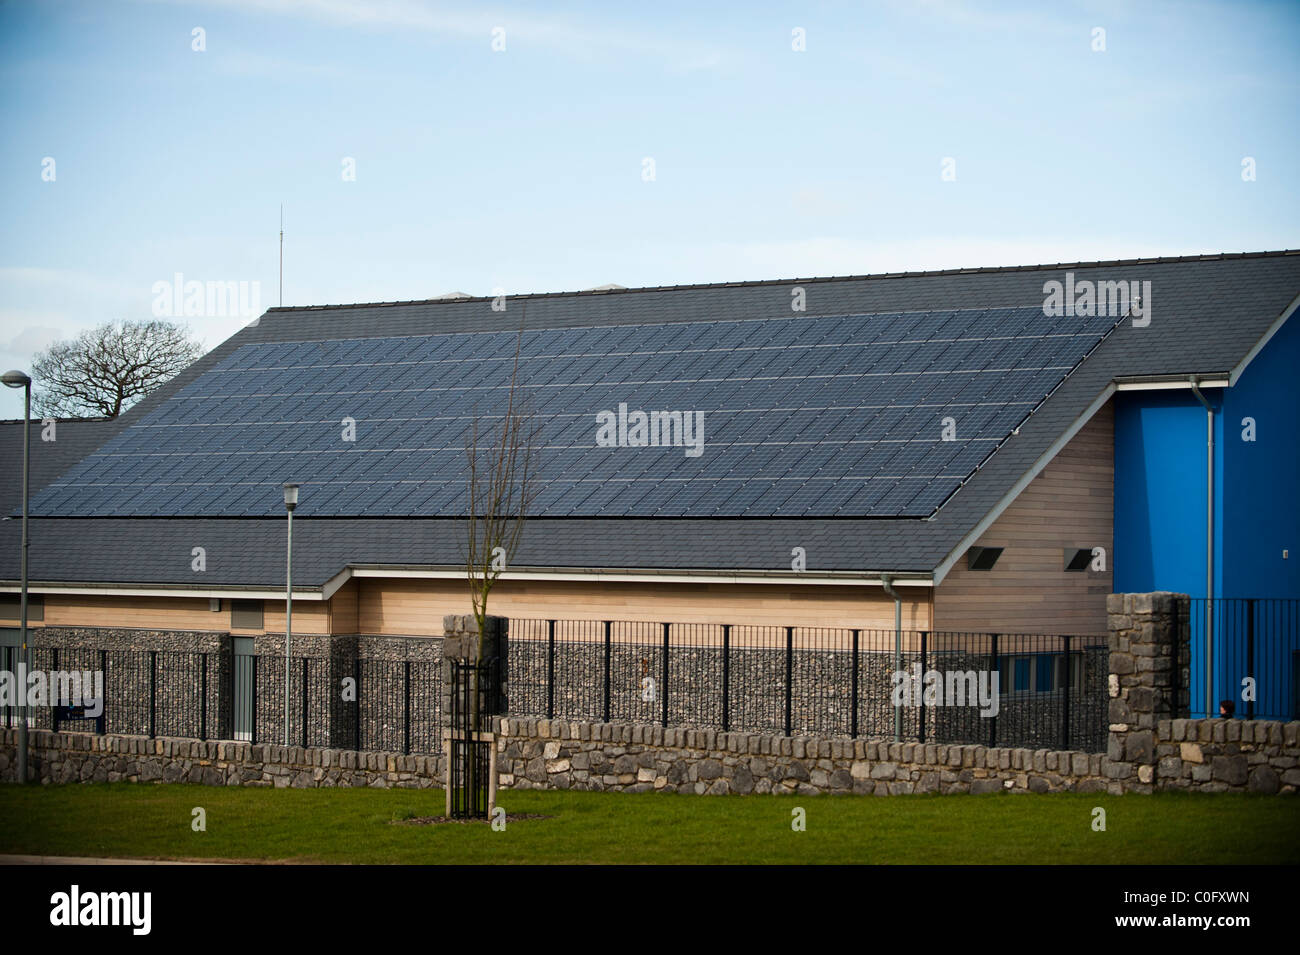 Panneaux solaires photovoltaïques sur le toit d'une école, au nord du Pays de Galles UK Llangefni Banque D'Images